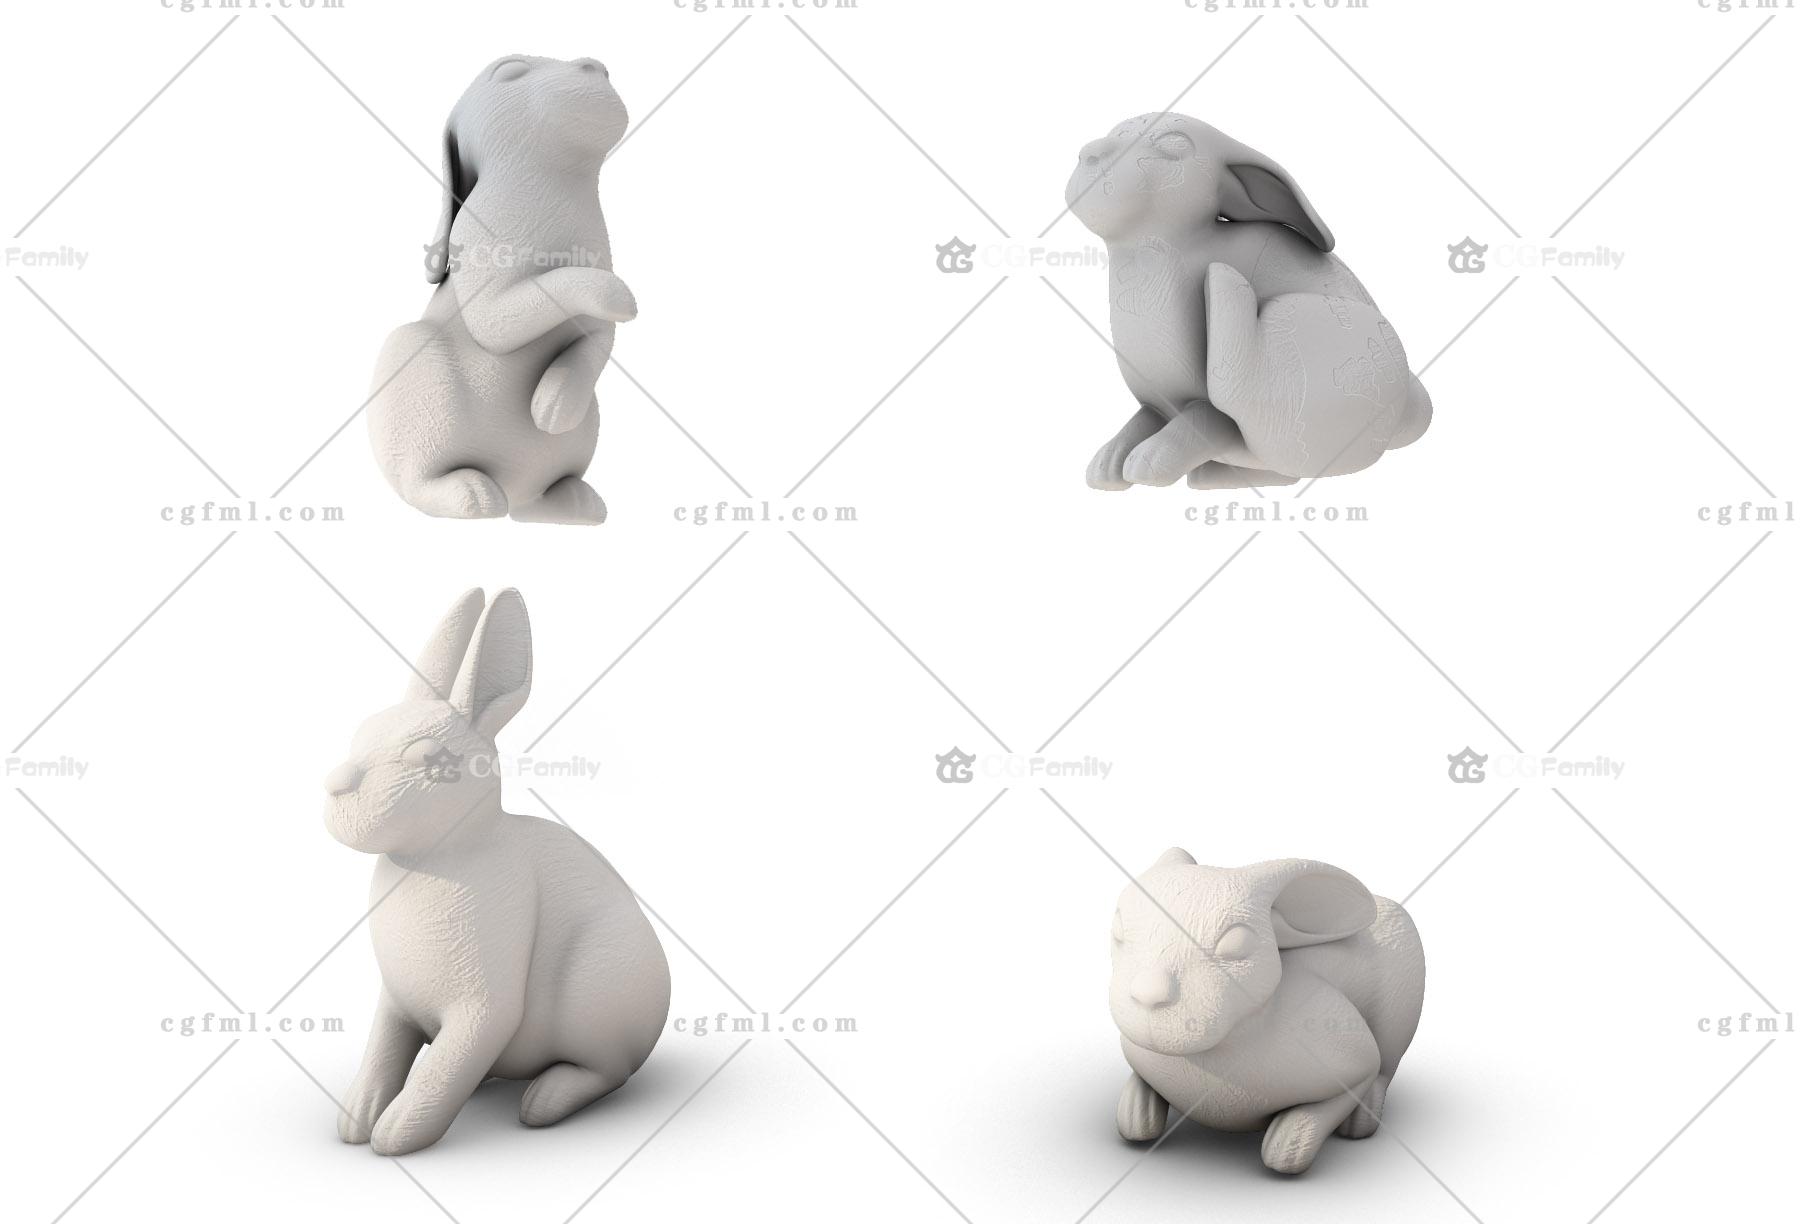 文章介绍 评价建议 cg模型_ 兔子动物雕塑_3d模型免费下载,软件:3dmax